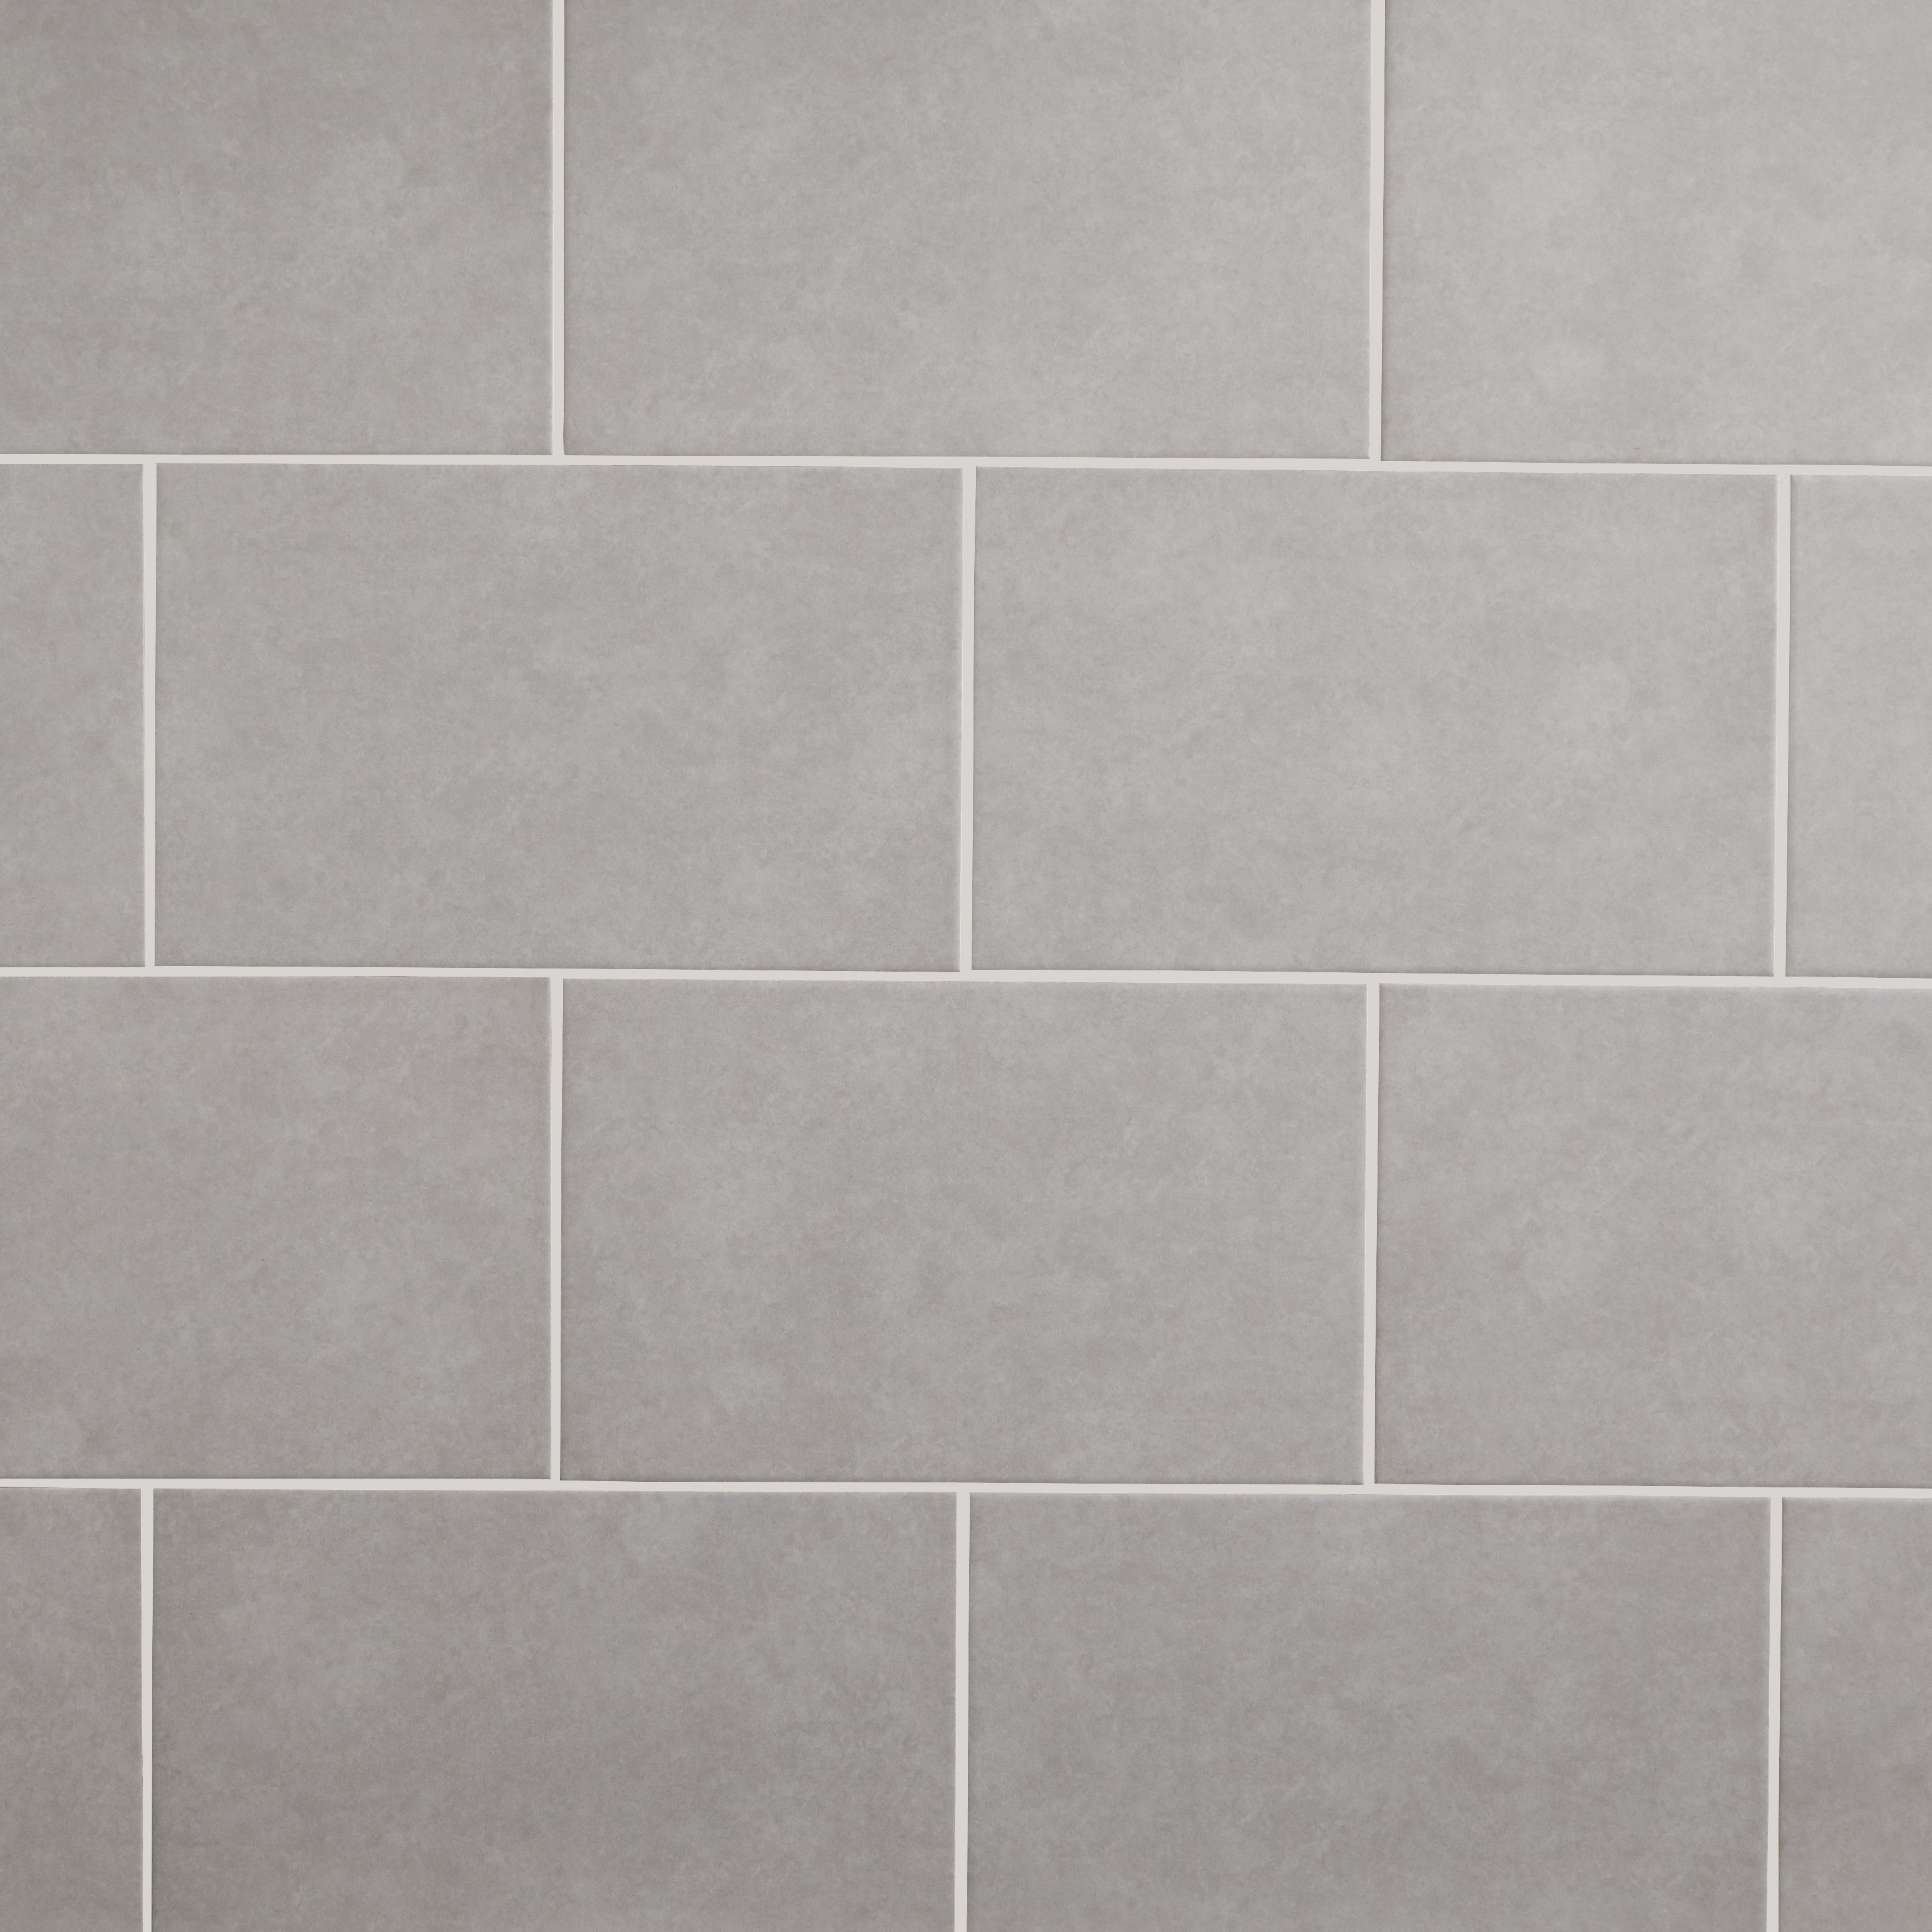 Cimenti Light grey Matt Plain Ceramic Wall Tile, Pack of 10, (L)402.4mm (W)251.6mm